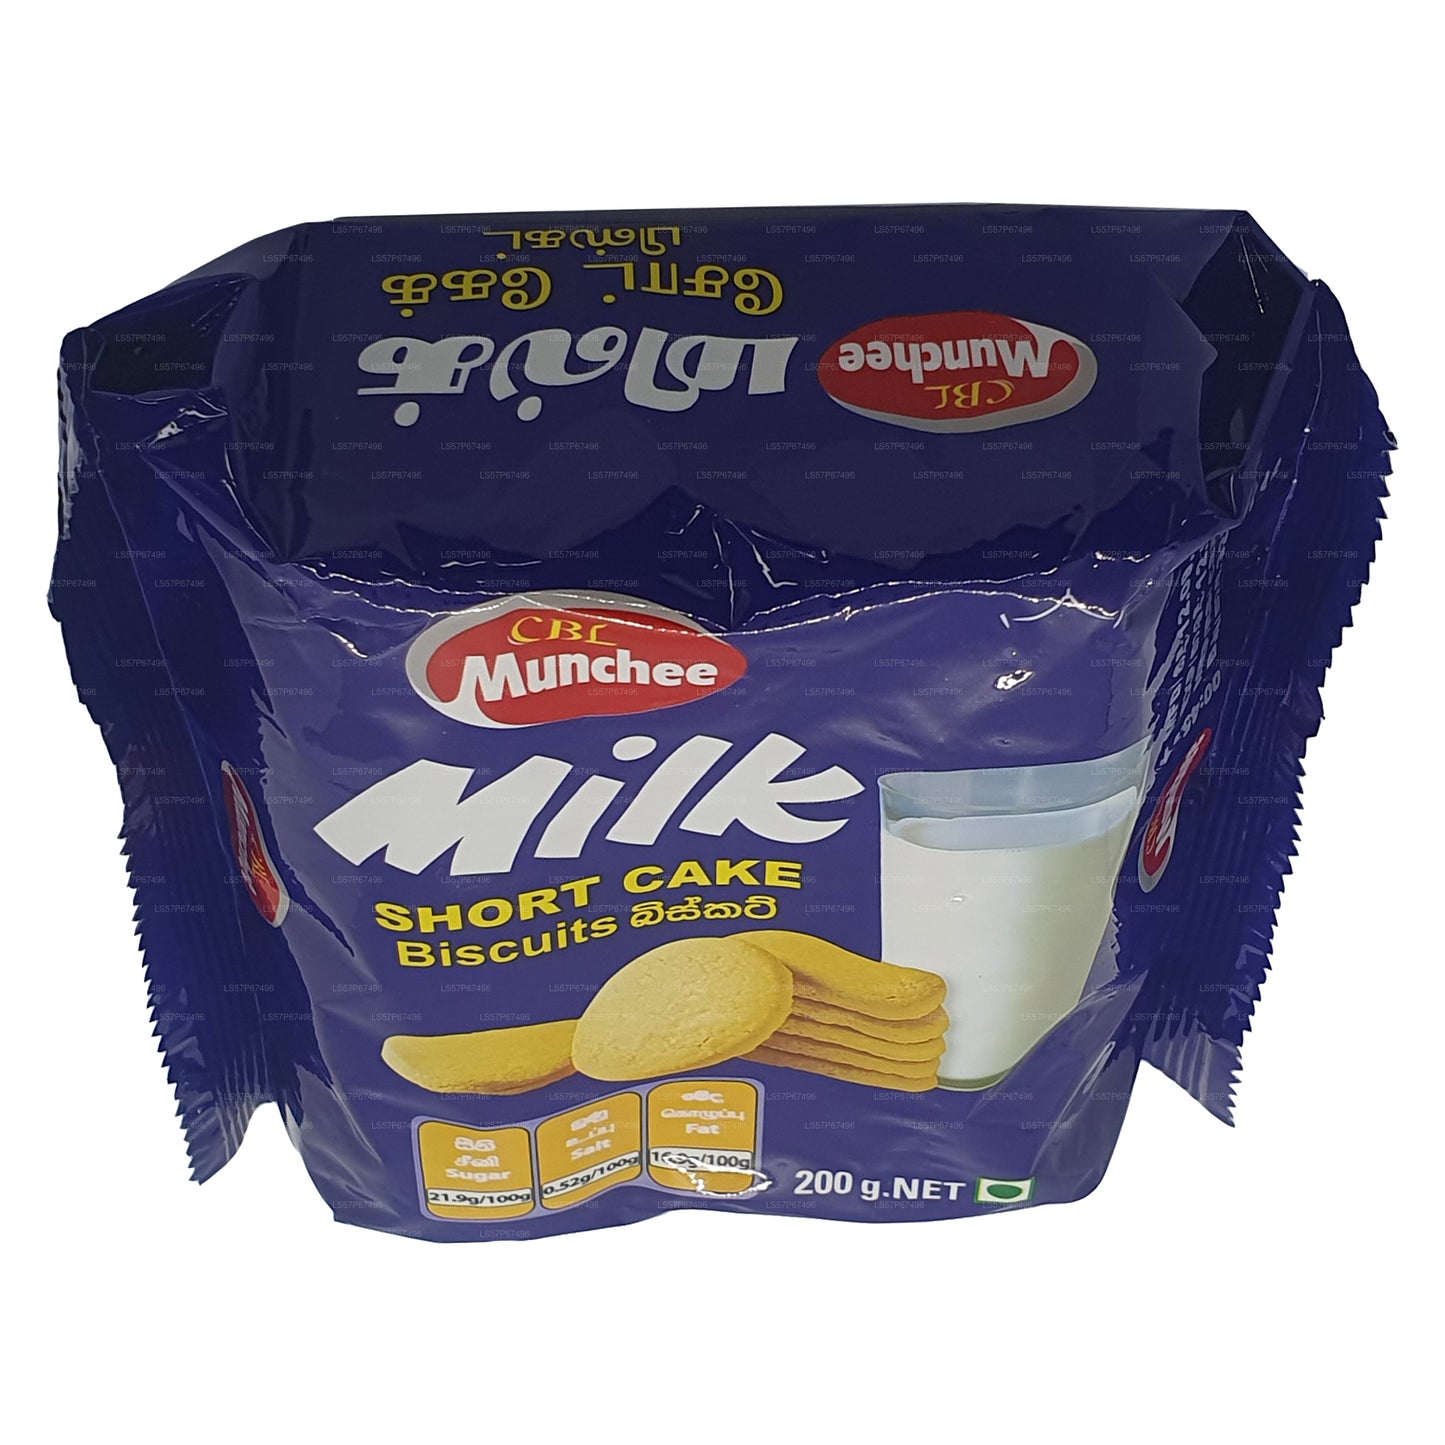 Munchee Milk Short Cake Herbatniki (200g)